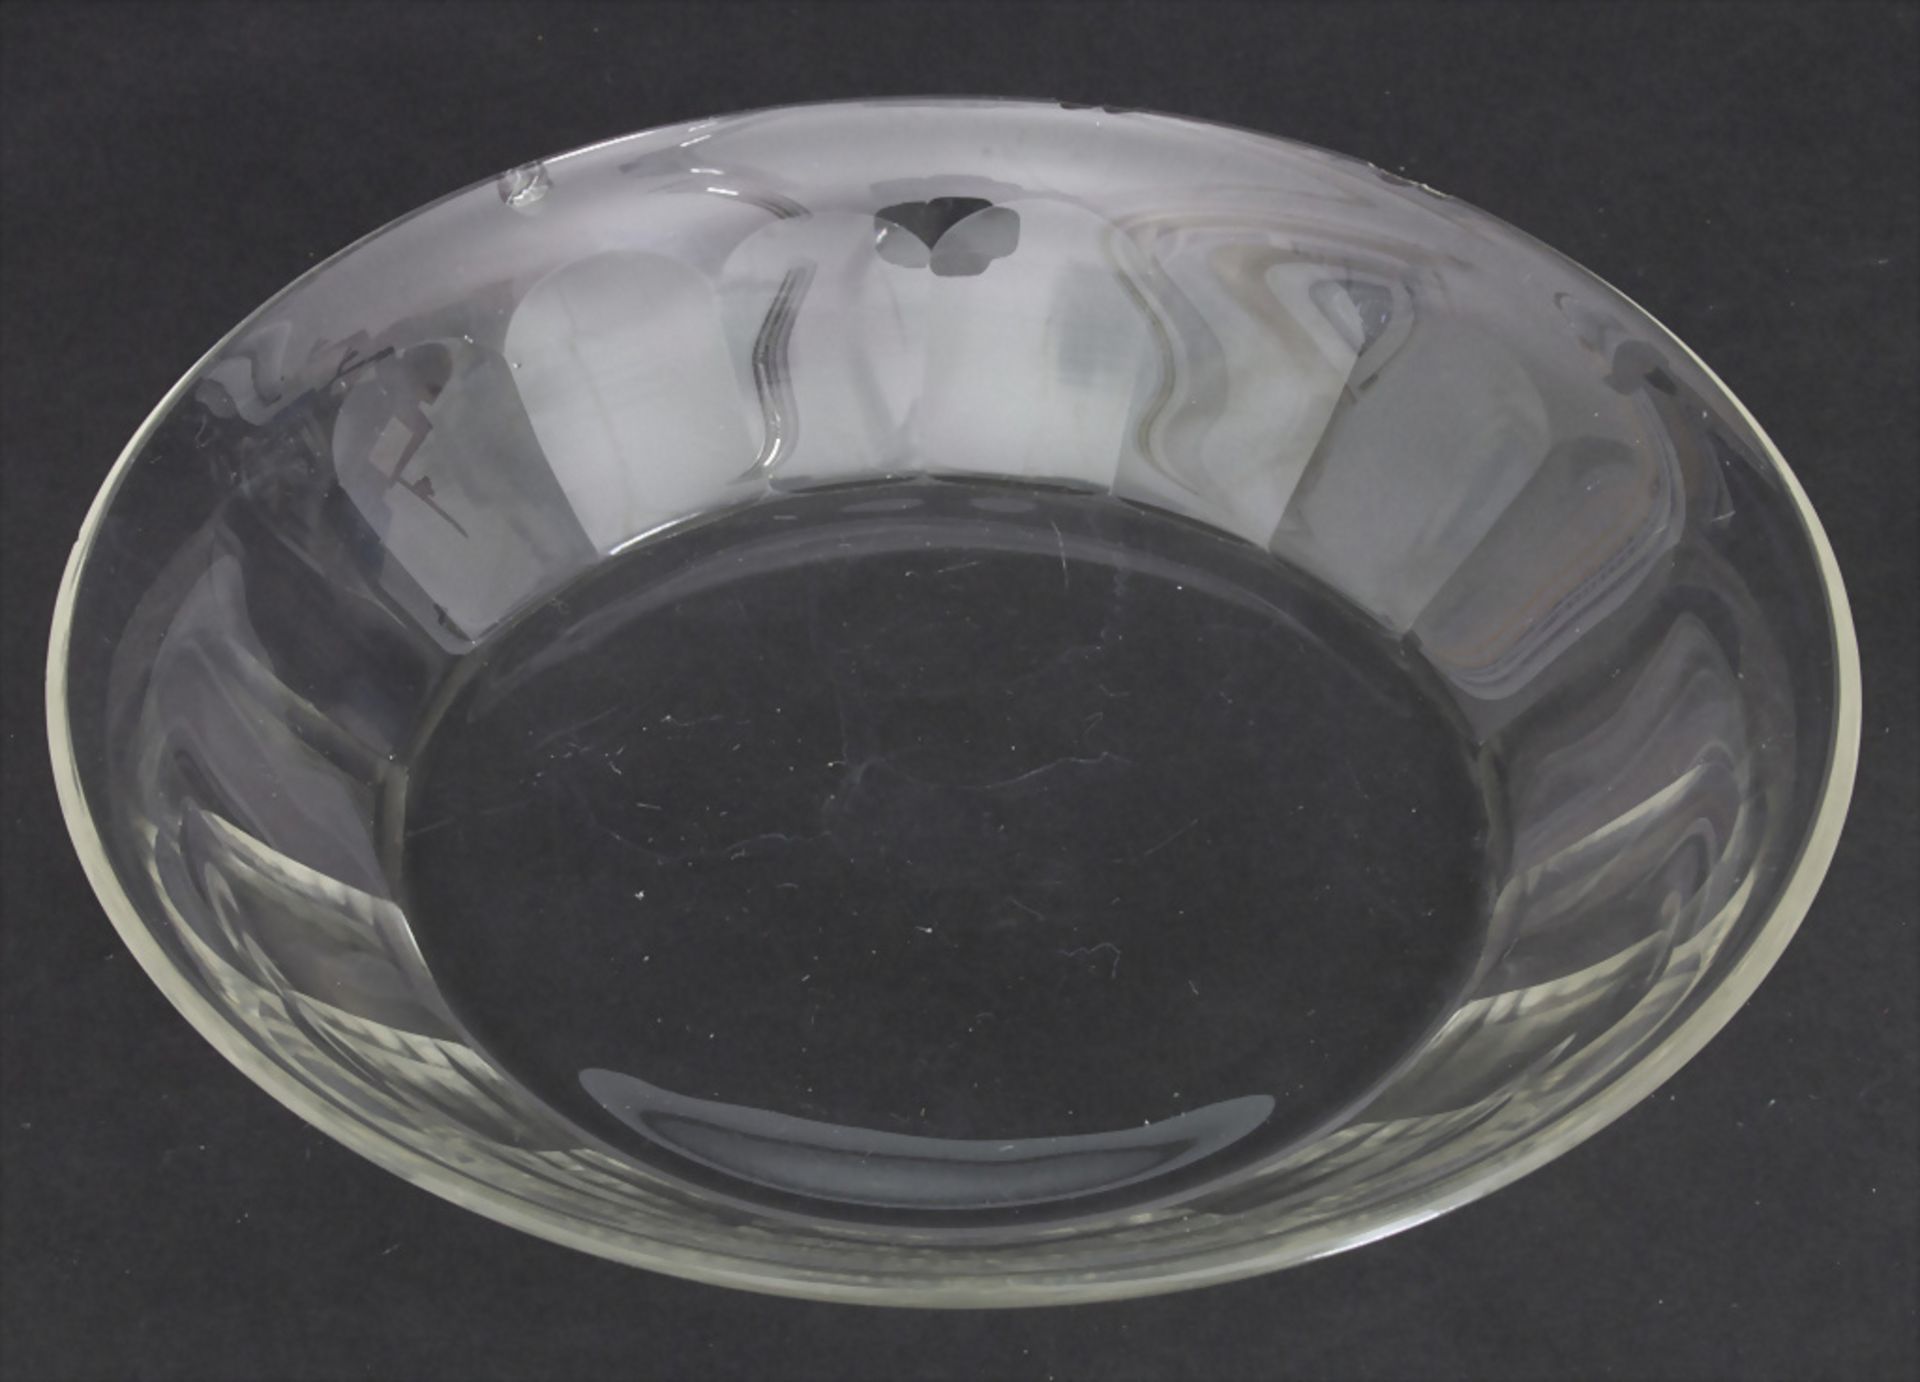 6 Glasschalen / 6 glass bowls, J. & L. Lobmeyr, Wien, um 1900 - Bild 2 aus 3